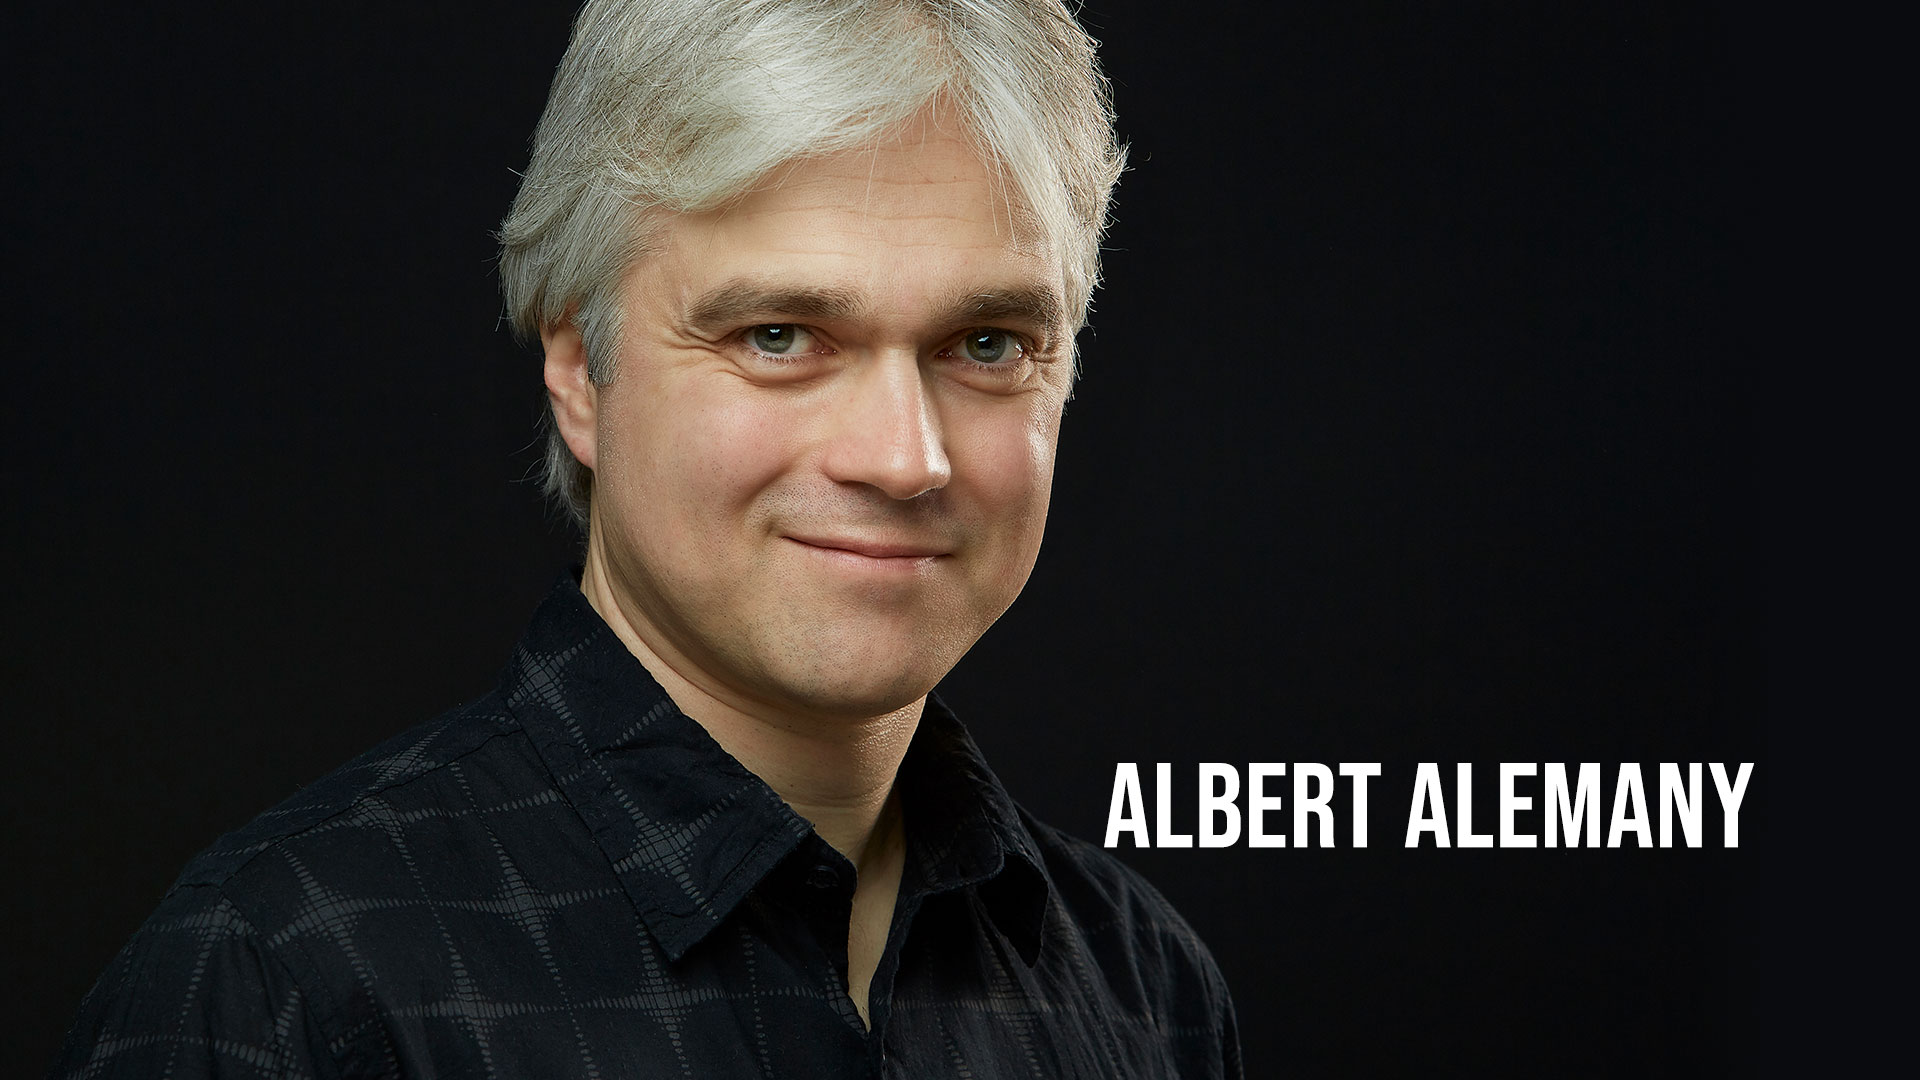 Albert Alemany - Actor